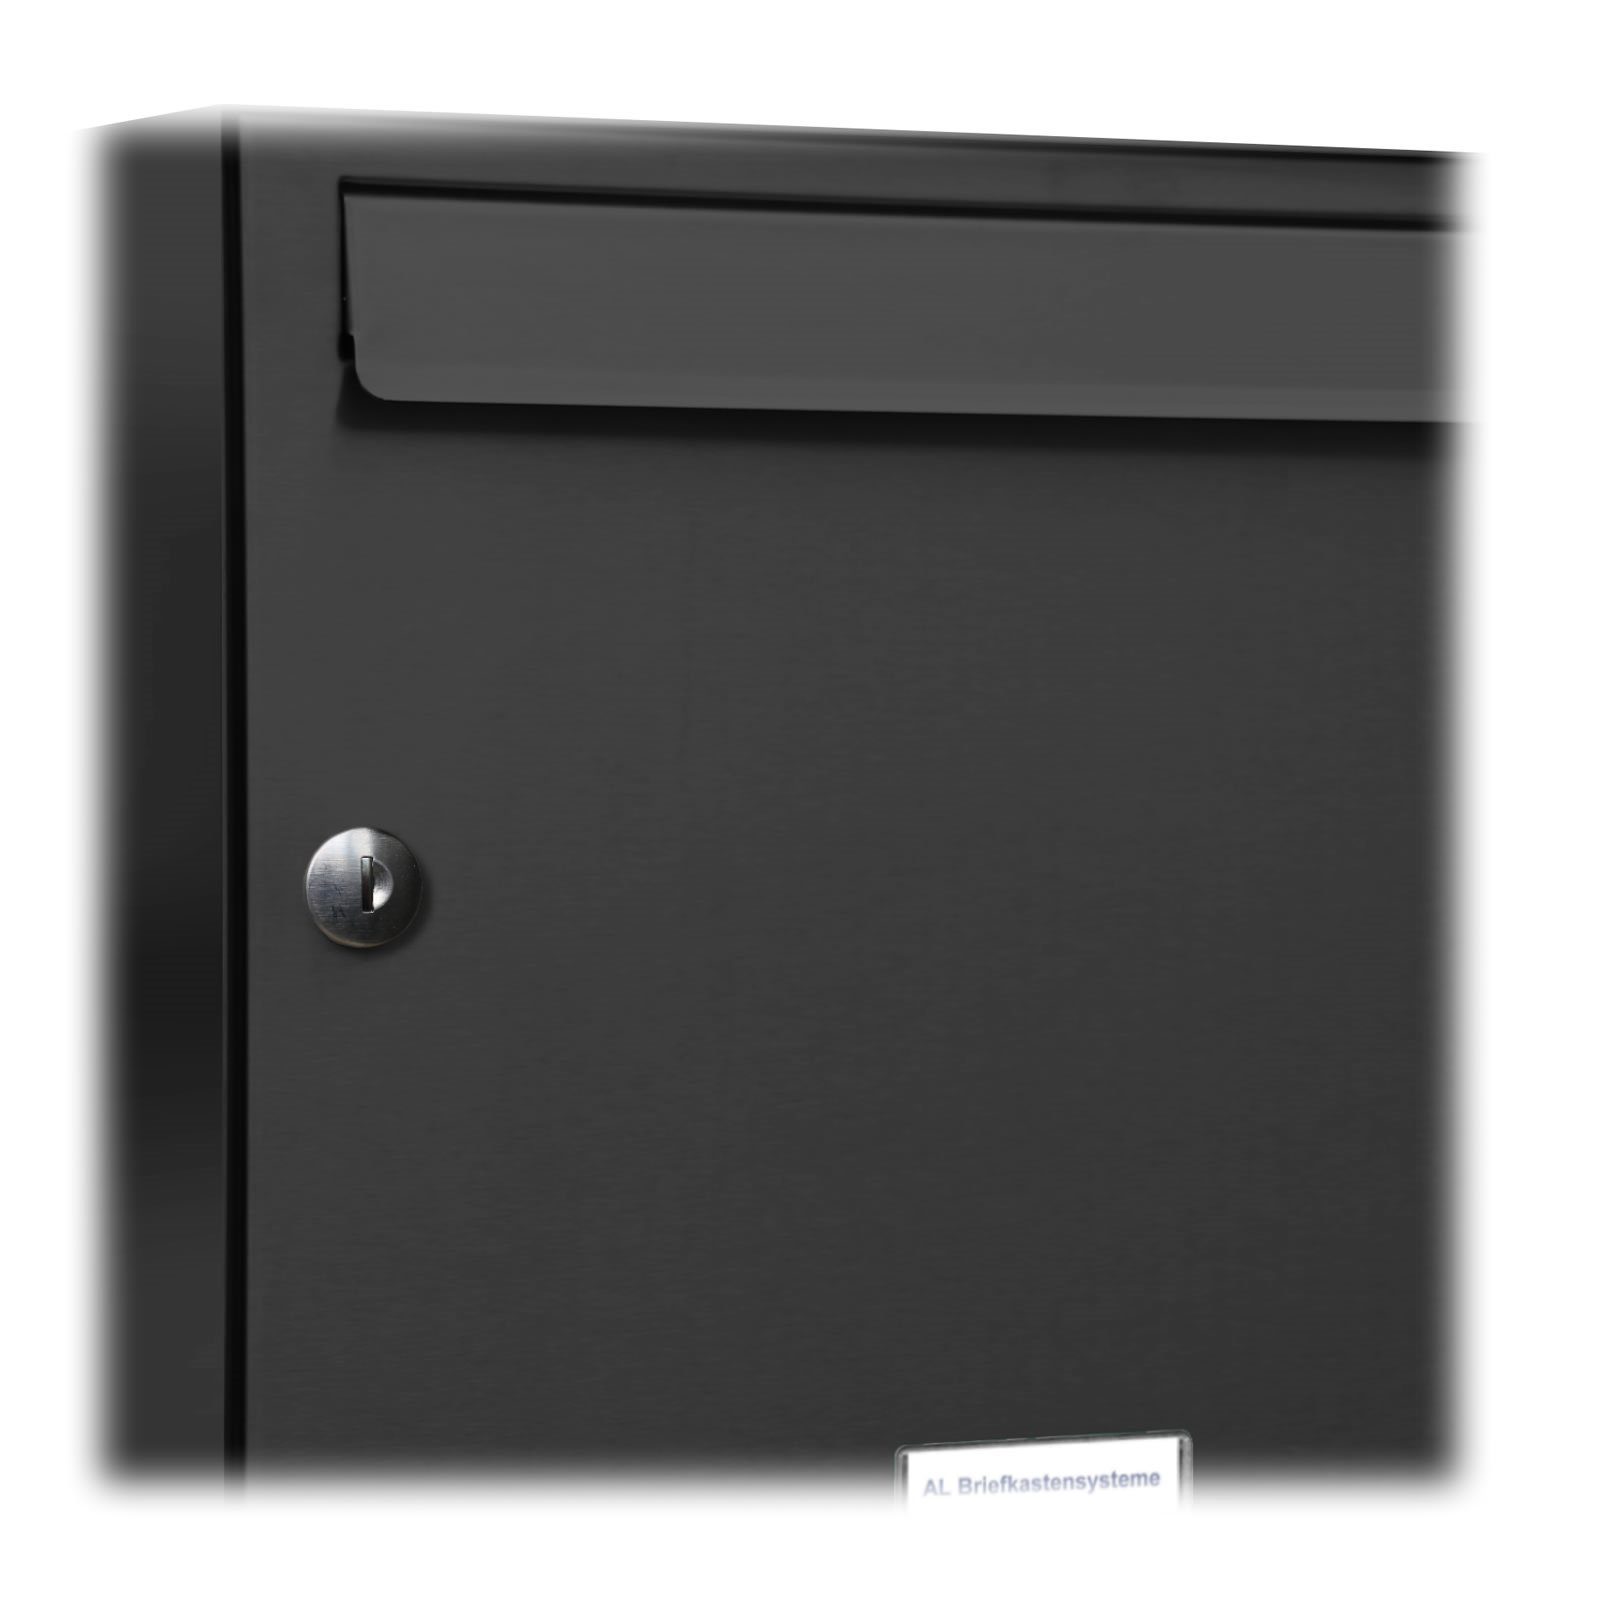 2er Anthrazit RAL für Wand Premium 2x1 Briefkastensysteme Briefkasten Außen Wandbriefkasten Farbe AL 7016